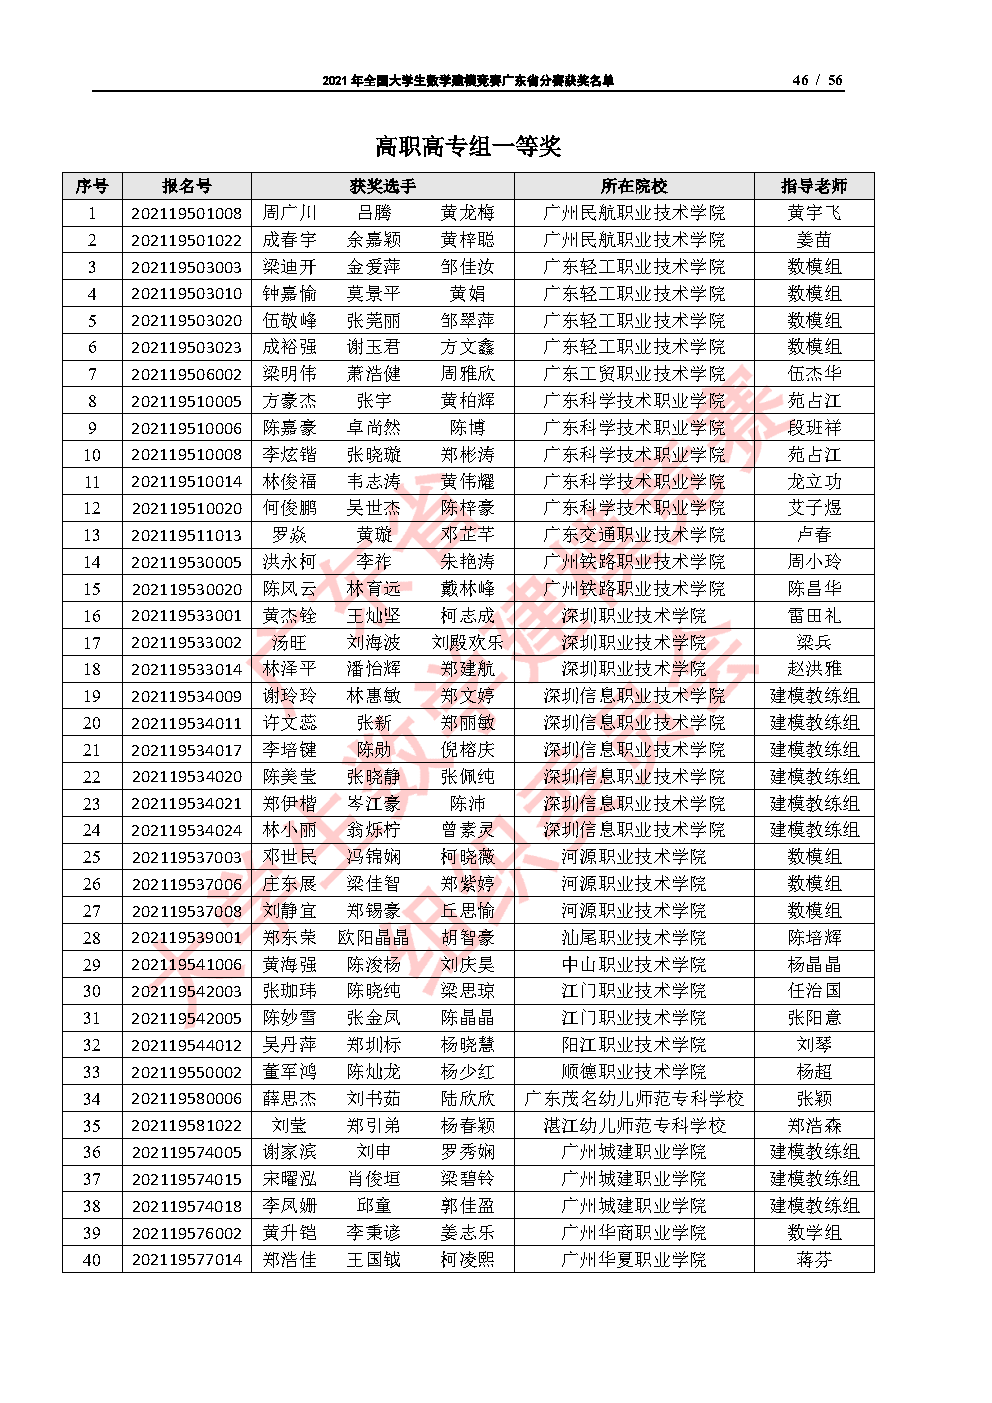 2021年全国大学生数学建模竞赛广东省分赛获奖名单_Page46.png